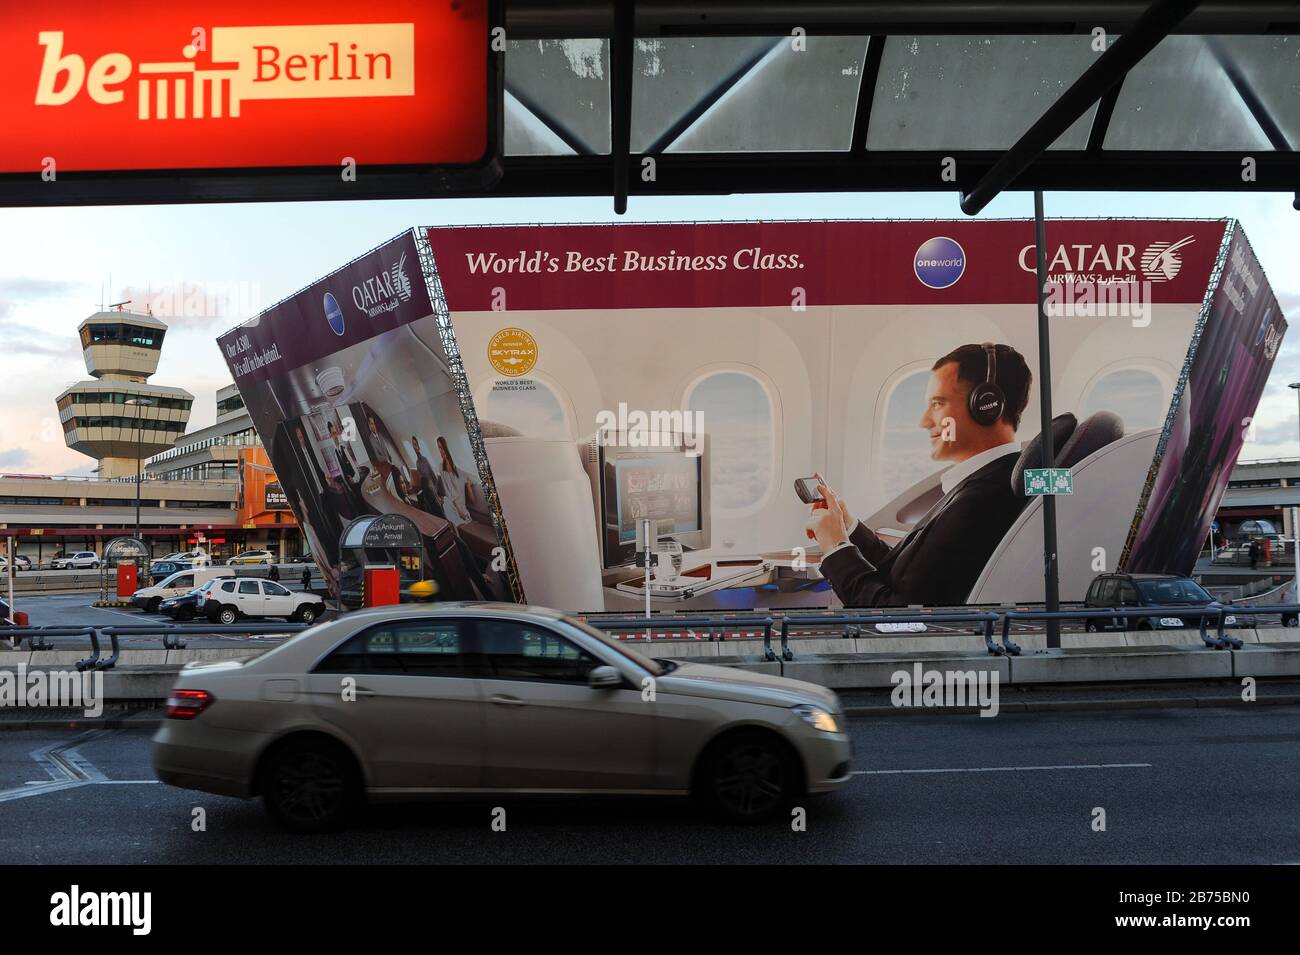 30.03.2015, Berlino, Germania, Europa - Pubblicità per la Business Class di Qatar Airways all'aeroporto di Berlino Tegel. [traduzione automatica] Foto Stock